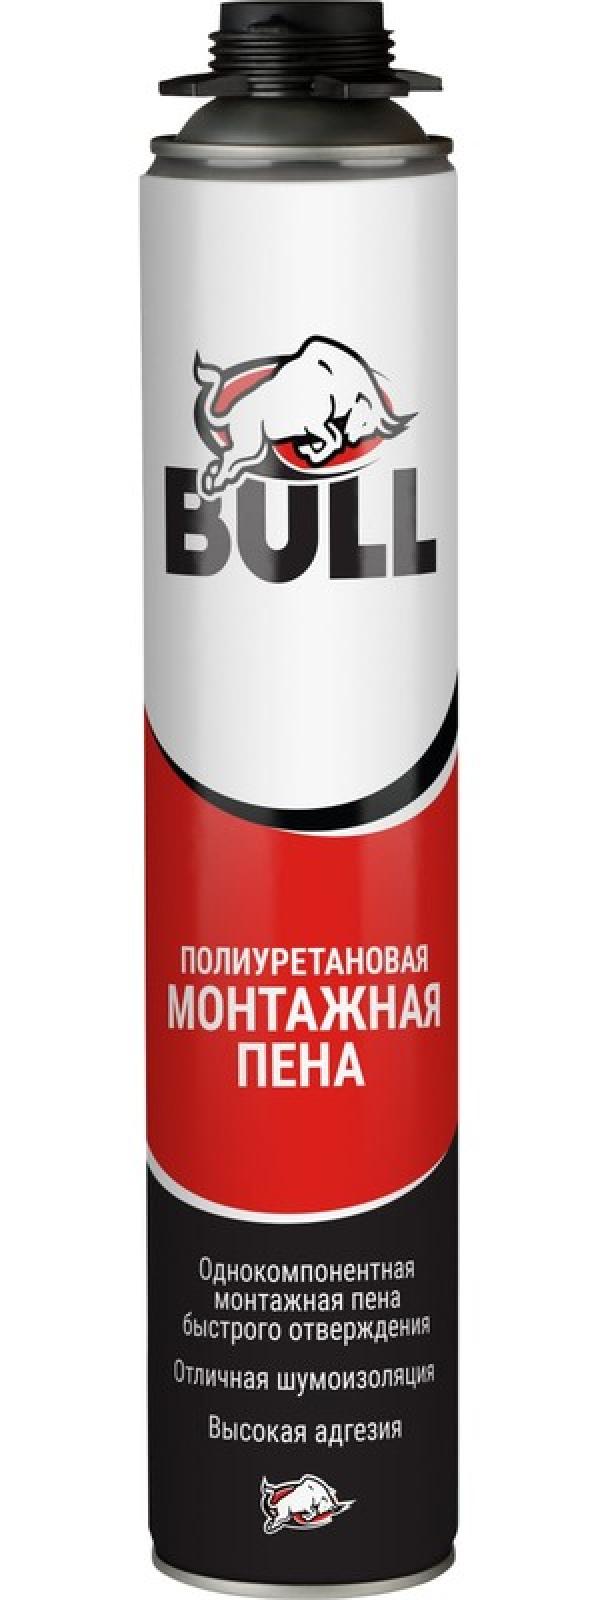 Bull PF600 Профессиональная монтажная пена, 750 мл/600 гр. купить онлайн за 363 руб. в интернет-магазине ТД ОЛИС